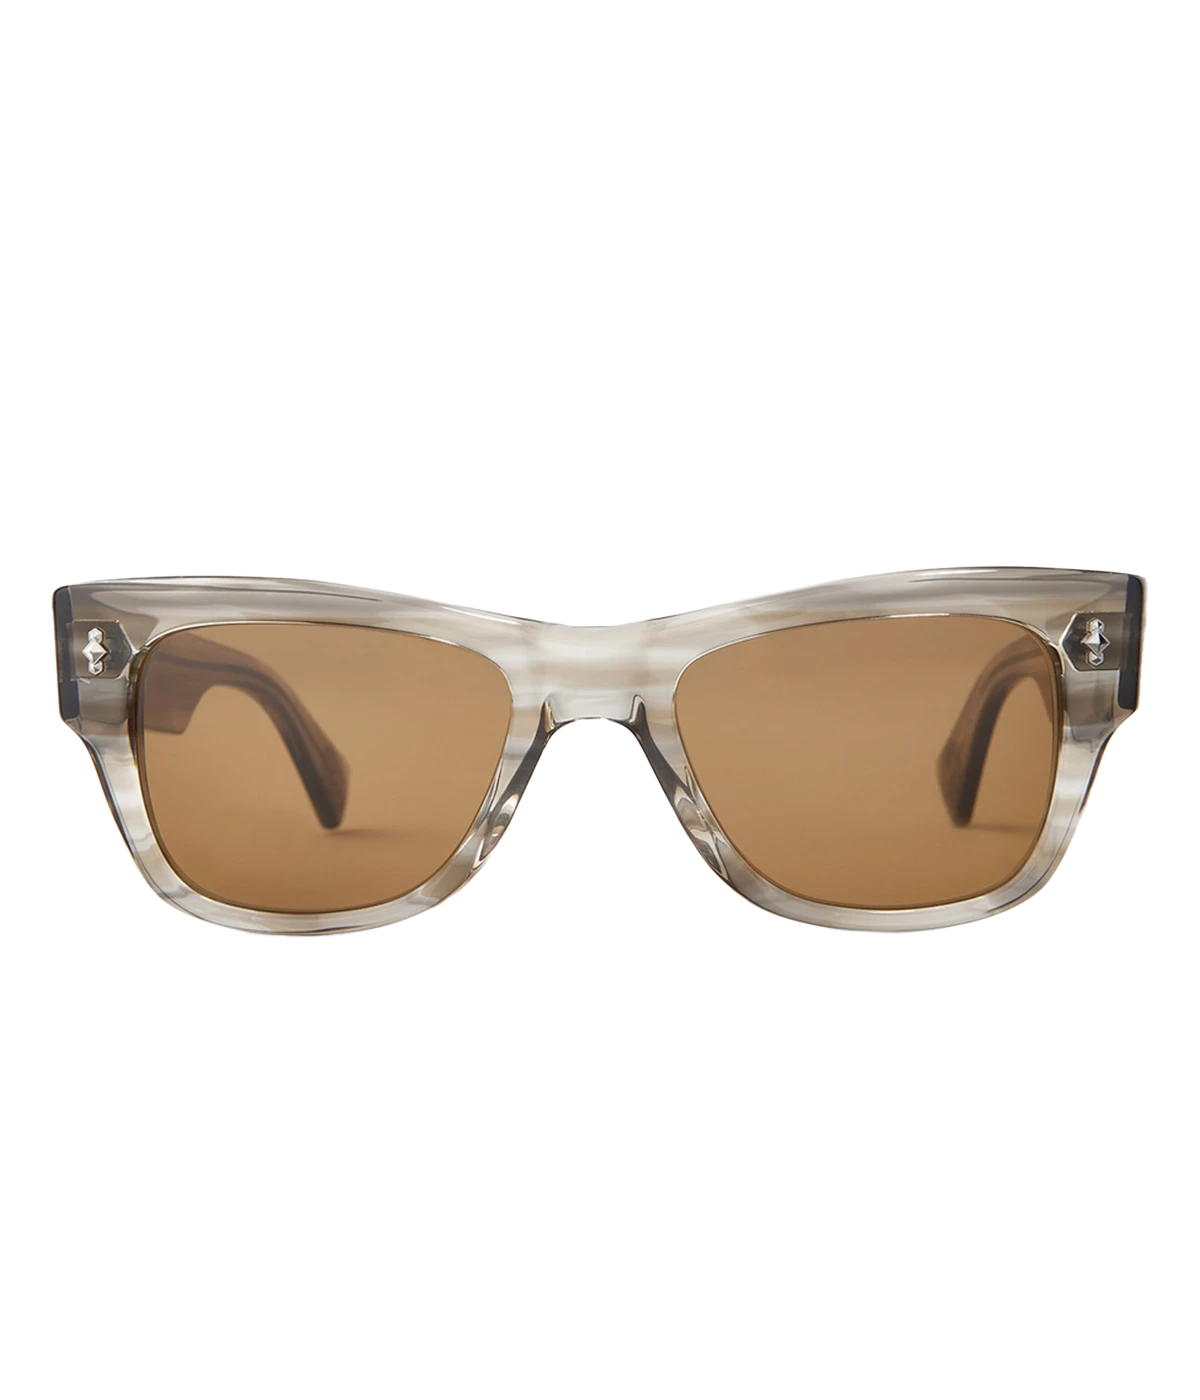 Duke S 49 Sunglasses in Grey, Pewter & Sunlit Silver